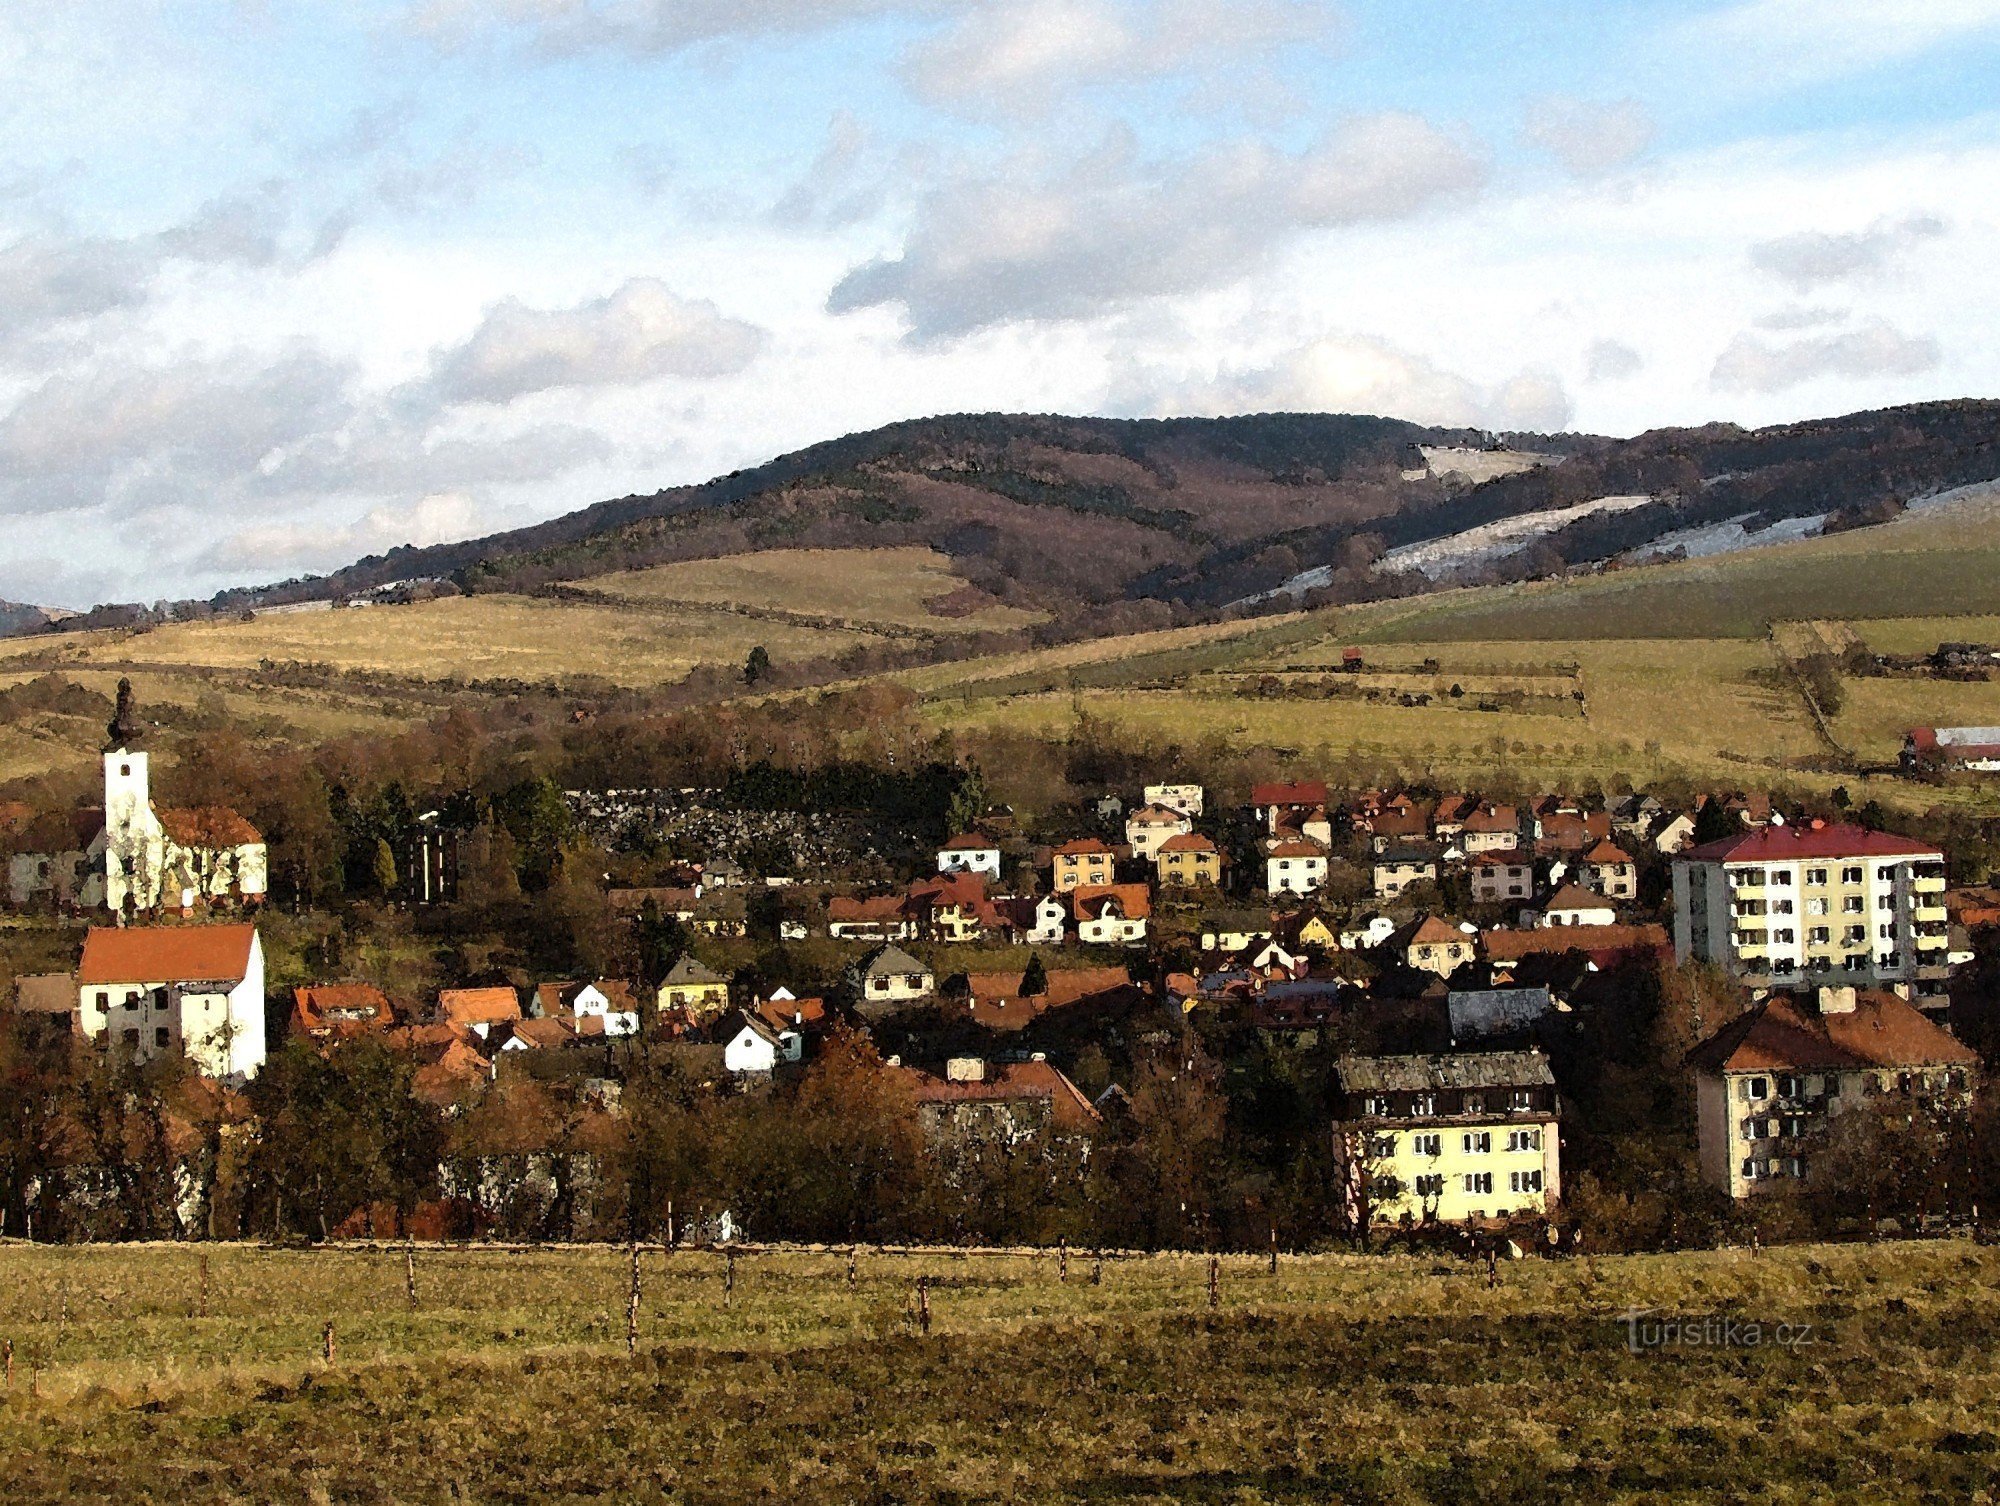 thành phố Brumov - Bylnice trong nền với Holý vrch